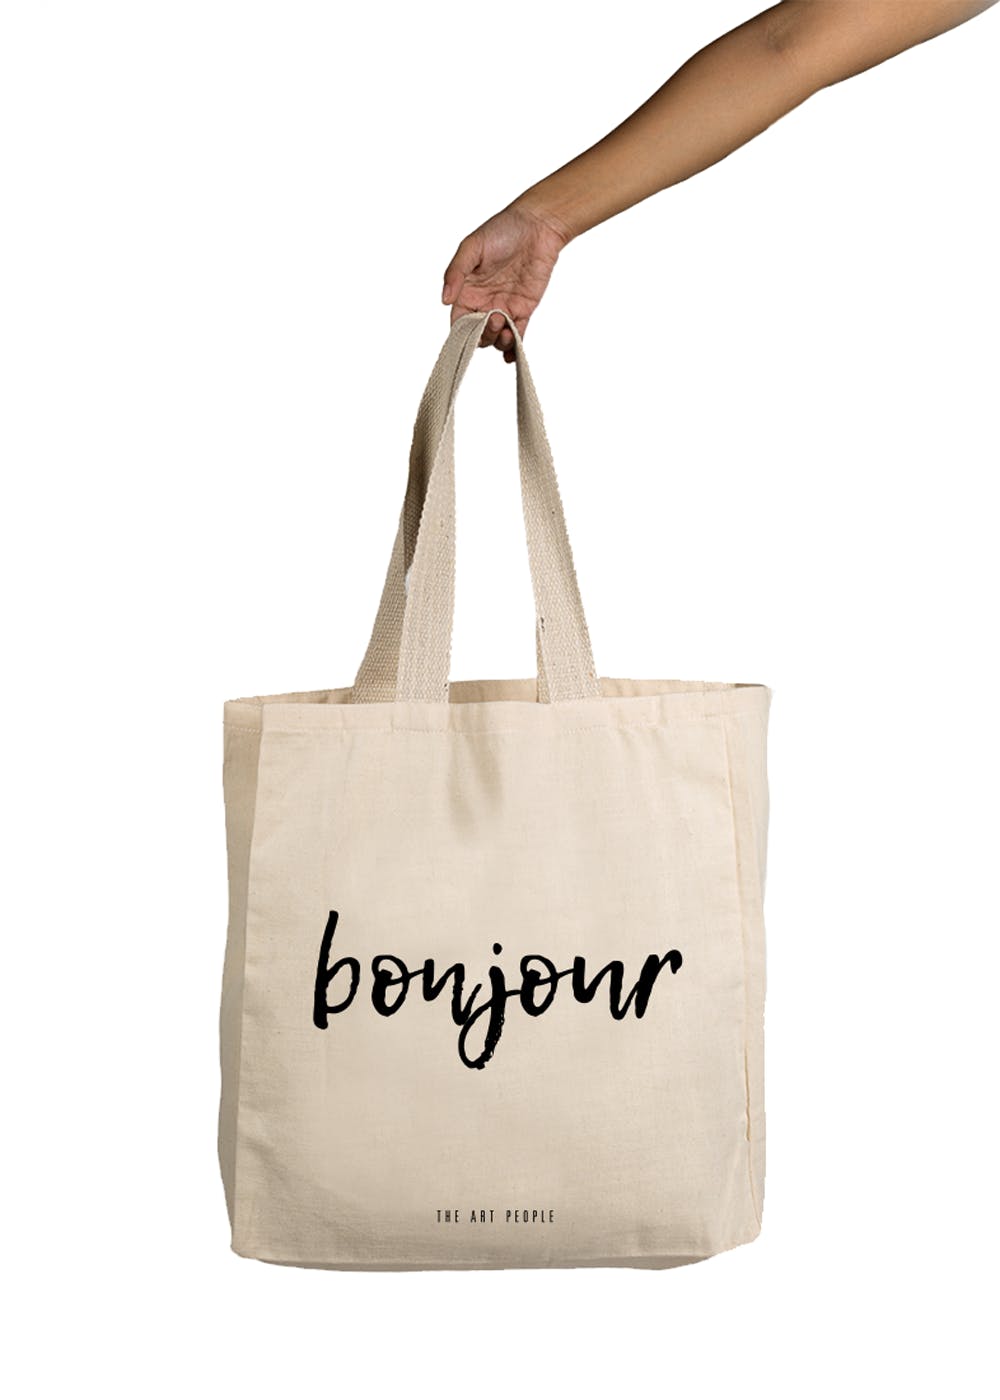 Get Bonjour Tote at ₹ 500 | LBB Shop